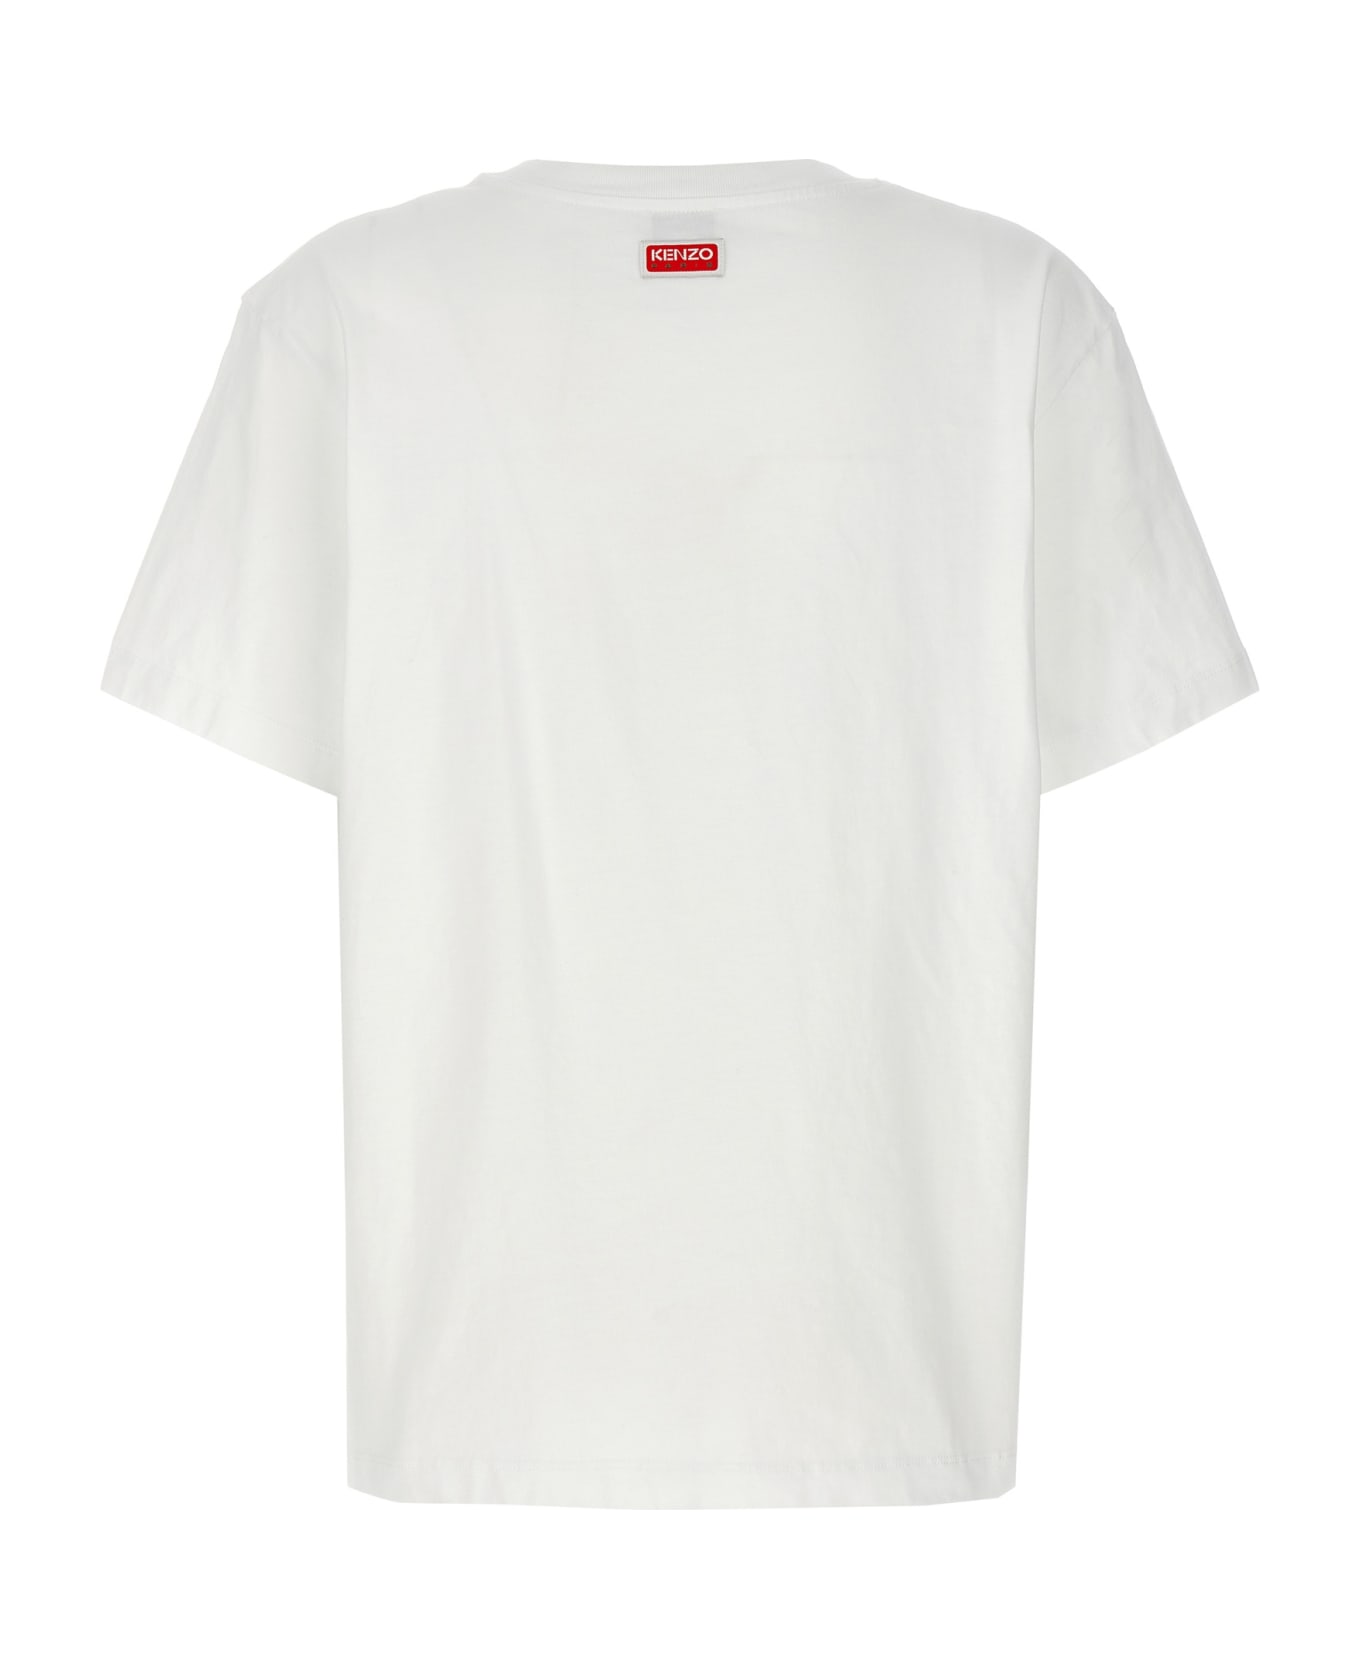 Kenzo 'kenzo Elephant' T-shirt - White Tシャツ